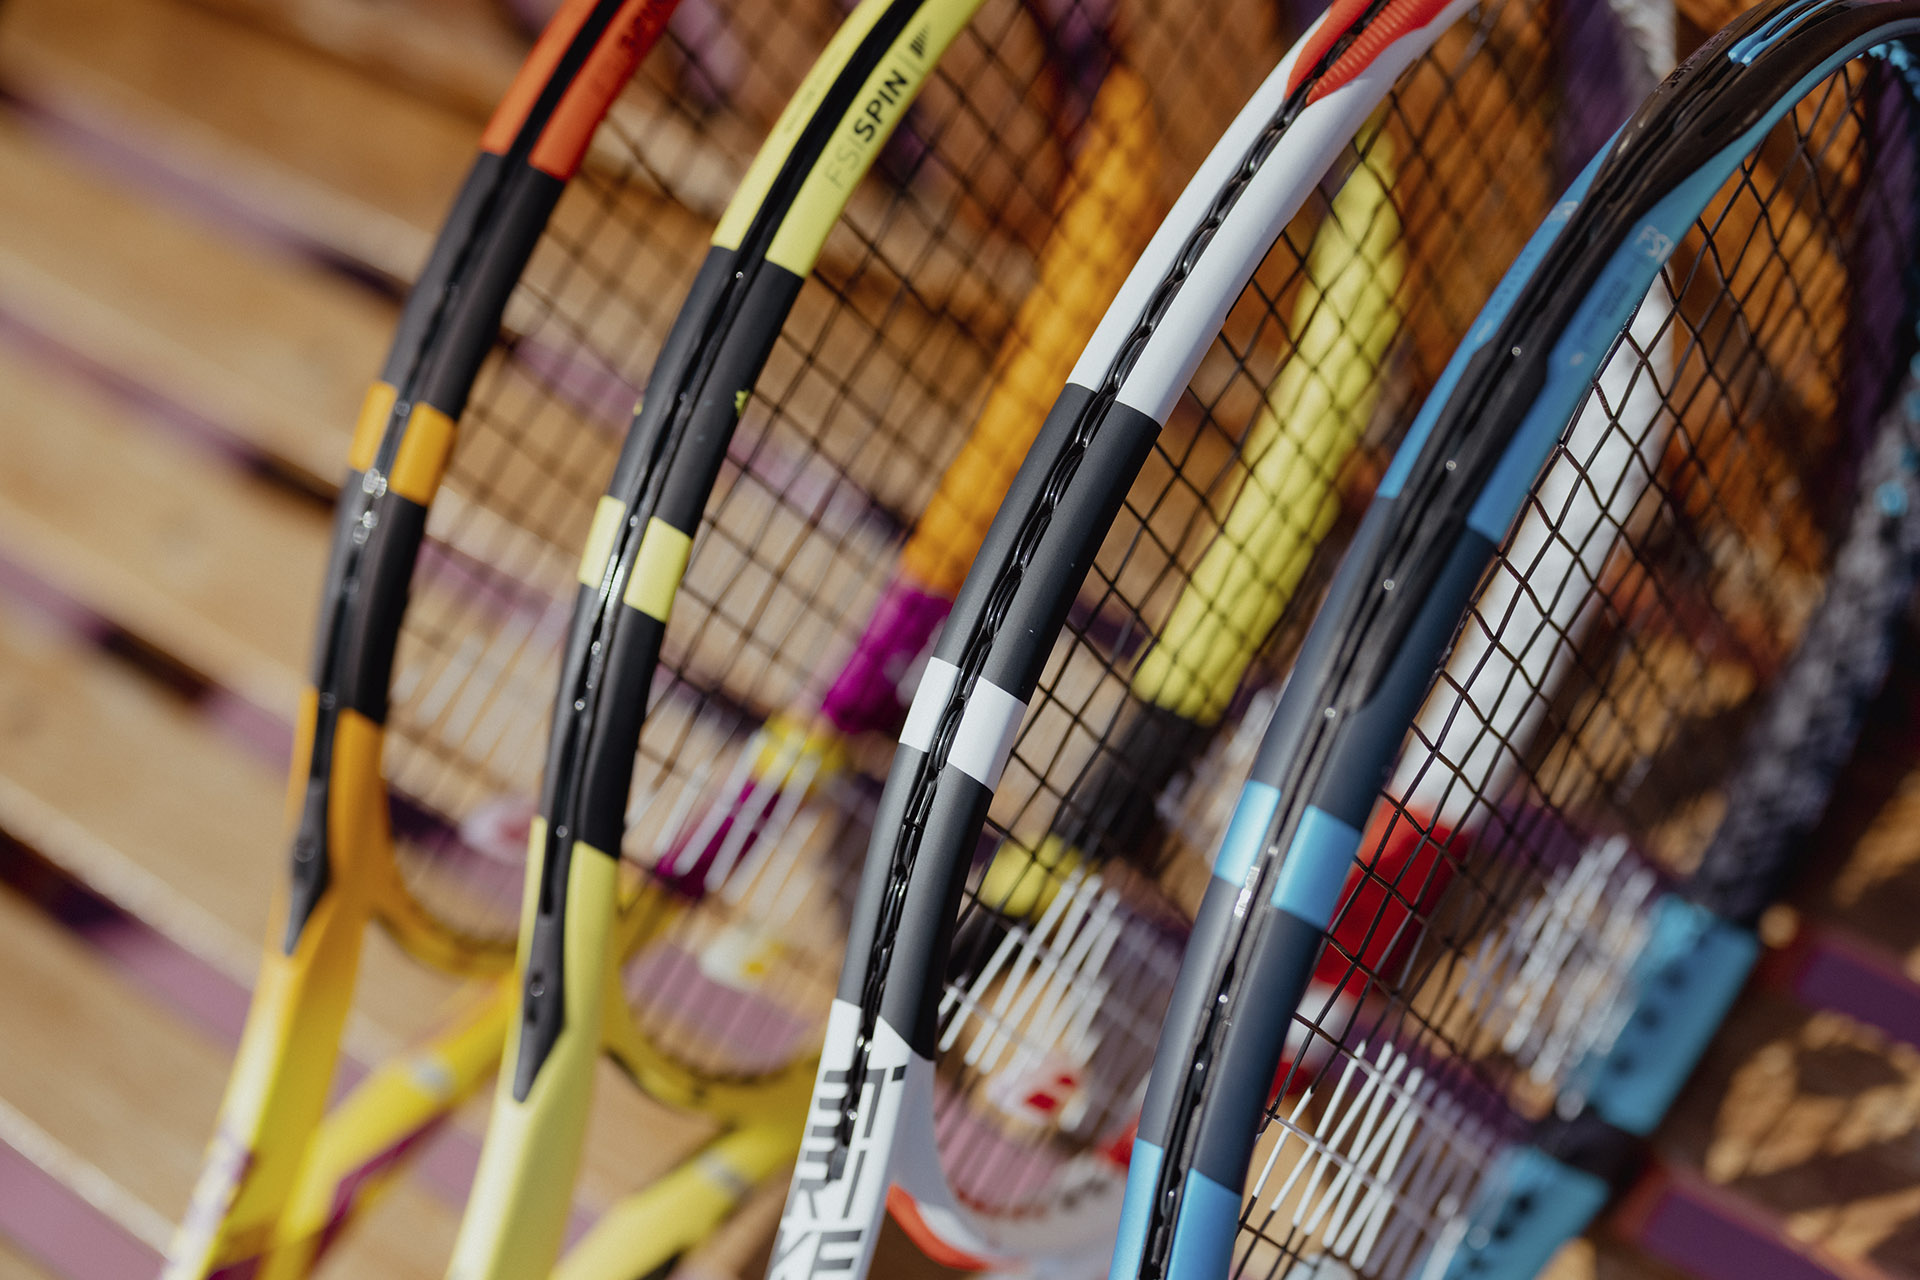 Participando de Torneios de Tênis - Blog Pró Spin - Notícias sobre Tênis